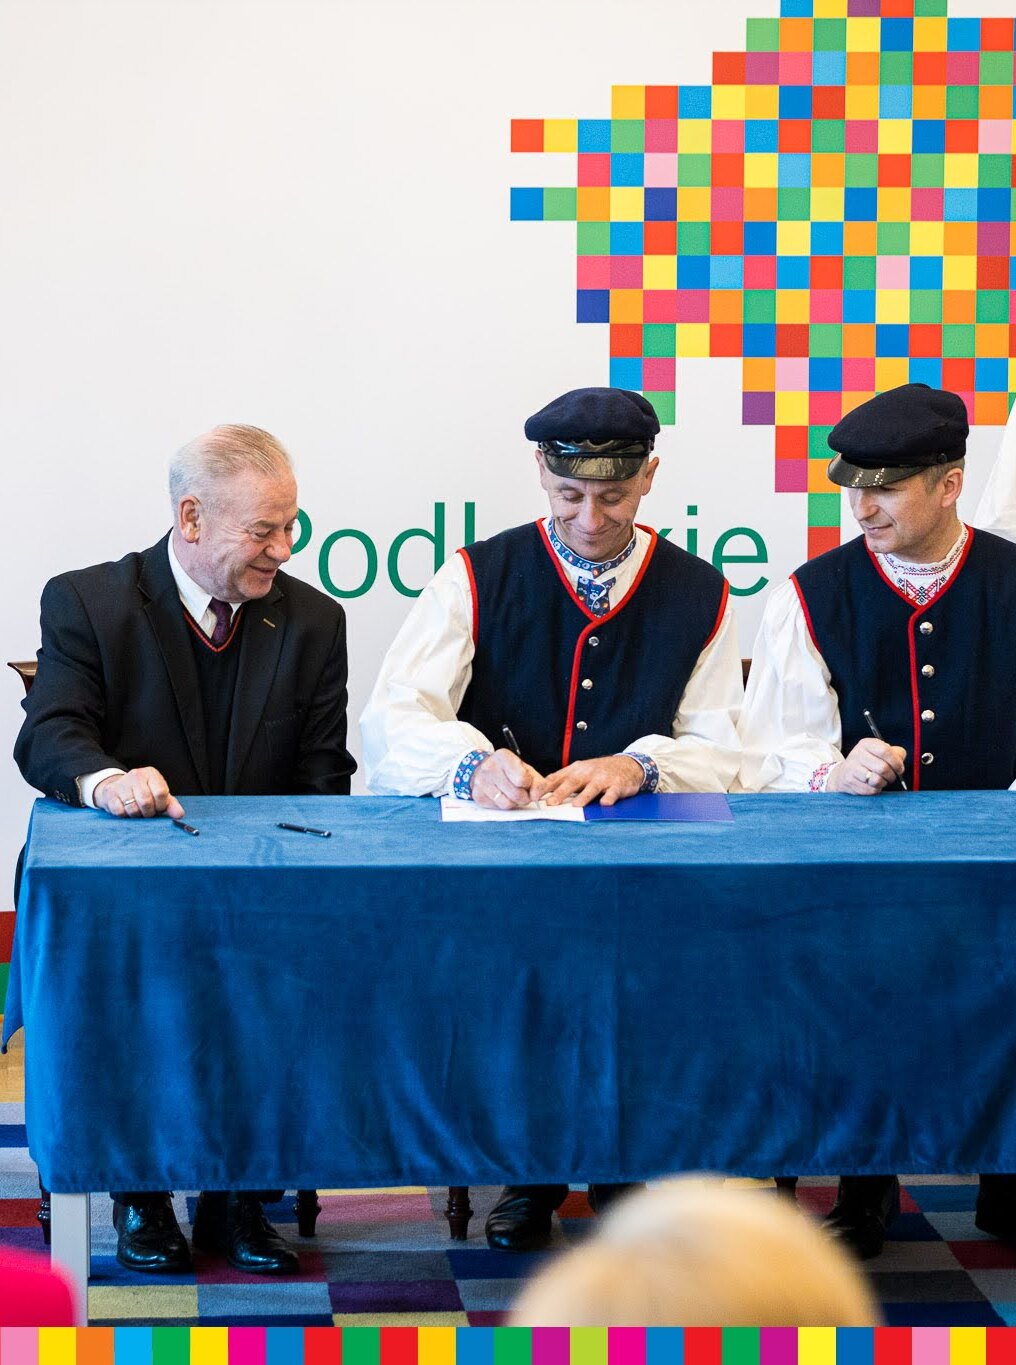 Trzech mężczyzn siedzi przy stole i podpisuje umowy.